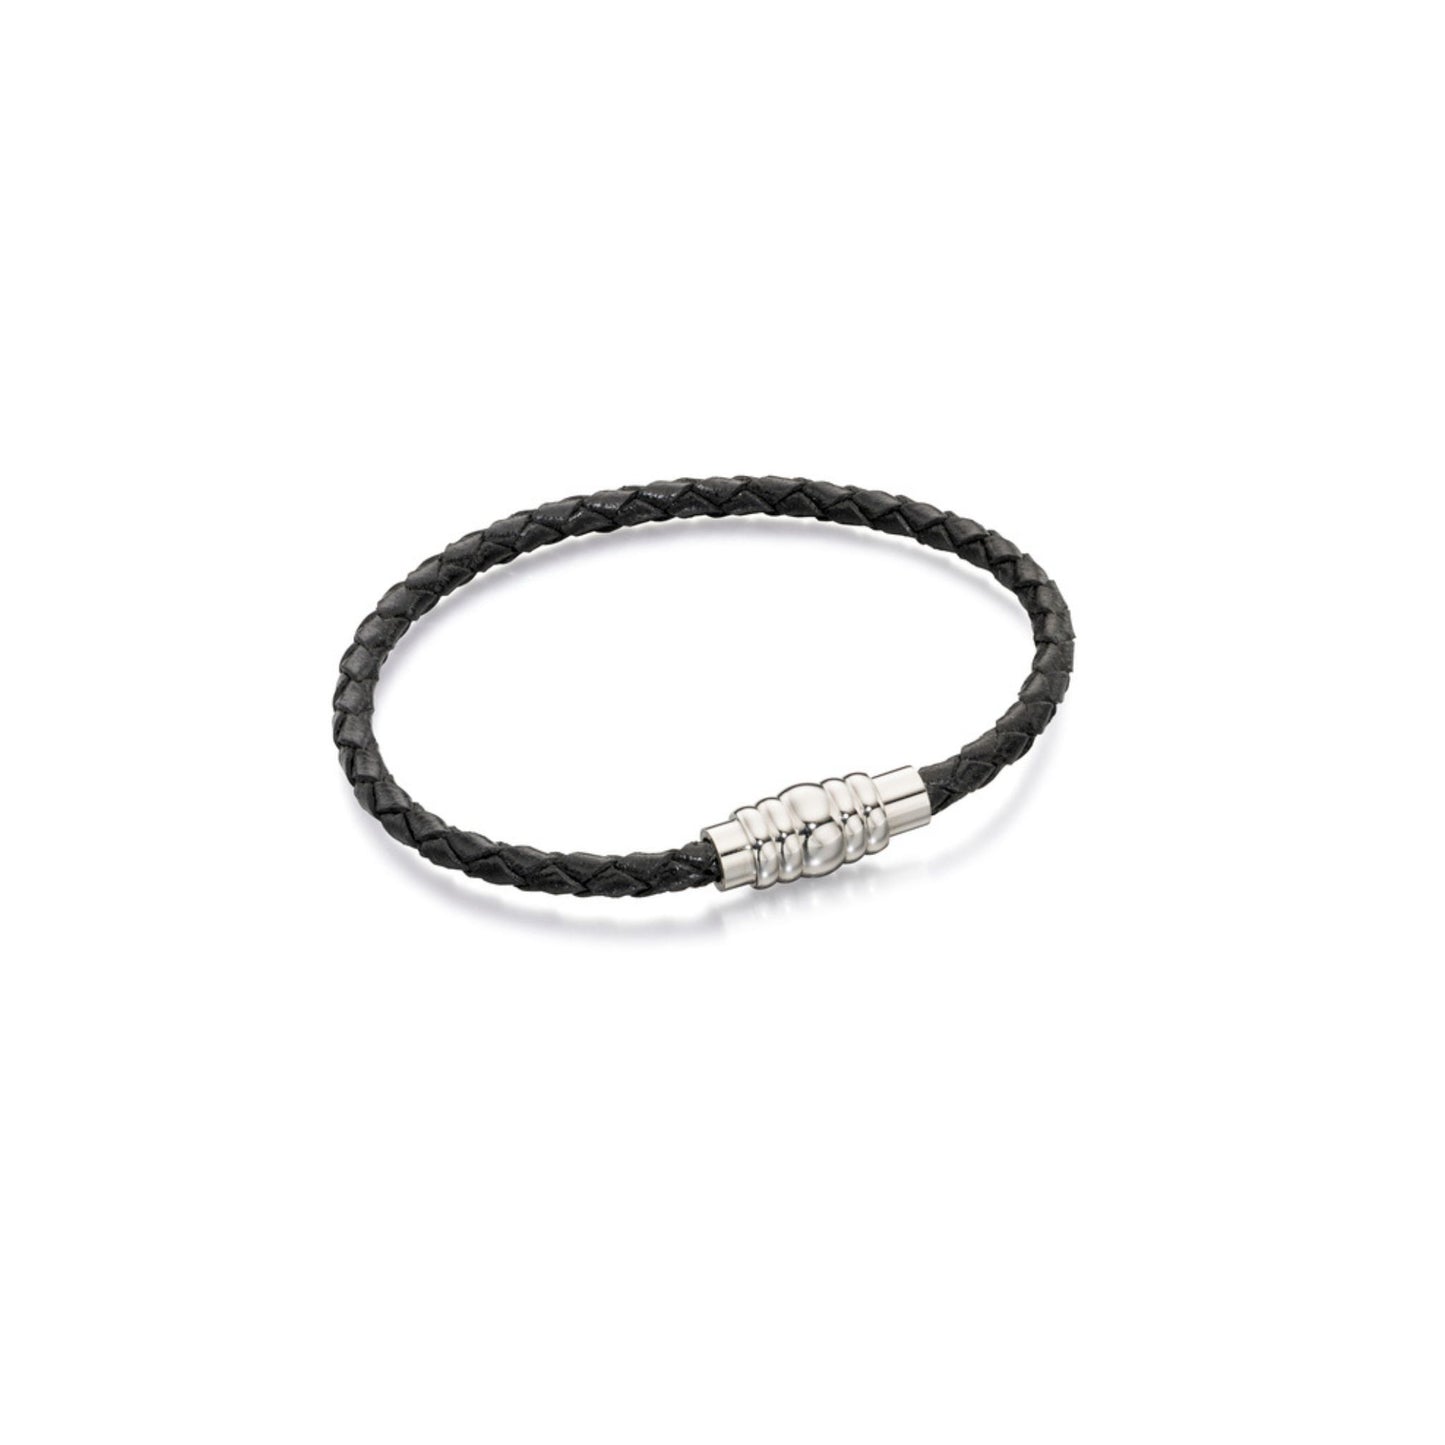 FRED BENNETT - Black leather bracelet